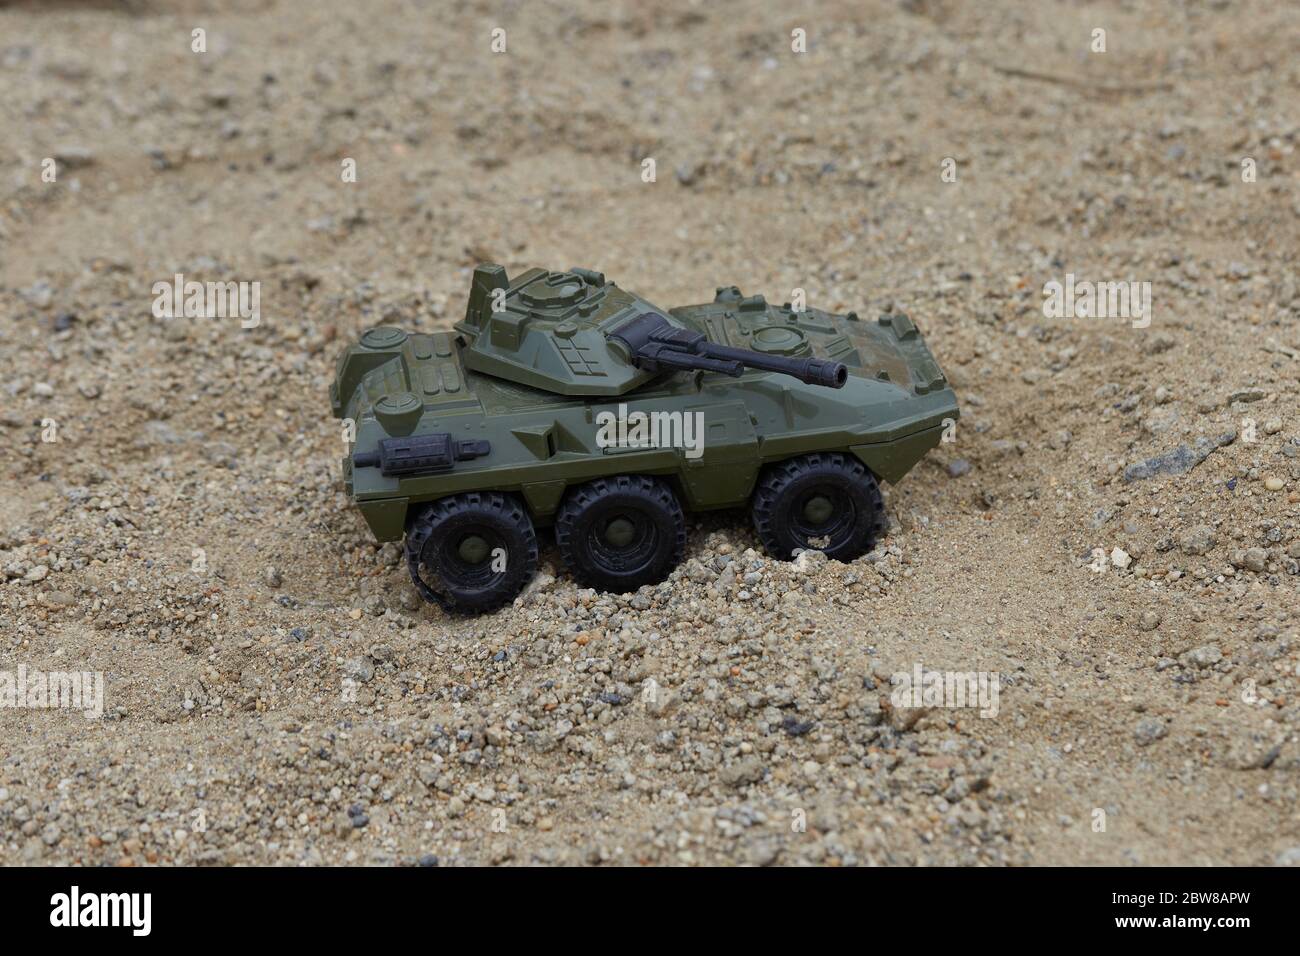 Un gros plan d'un véhicule militaire de jouet vert sur un sable Photo Stock  - Alamy